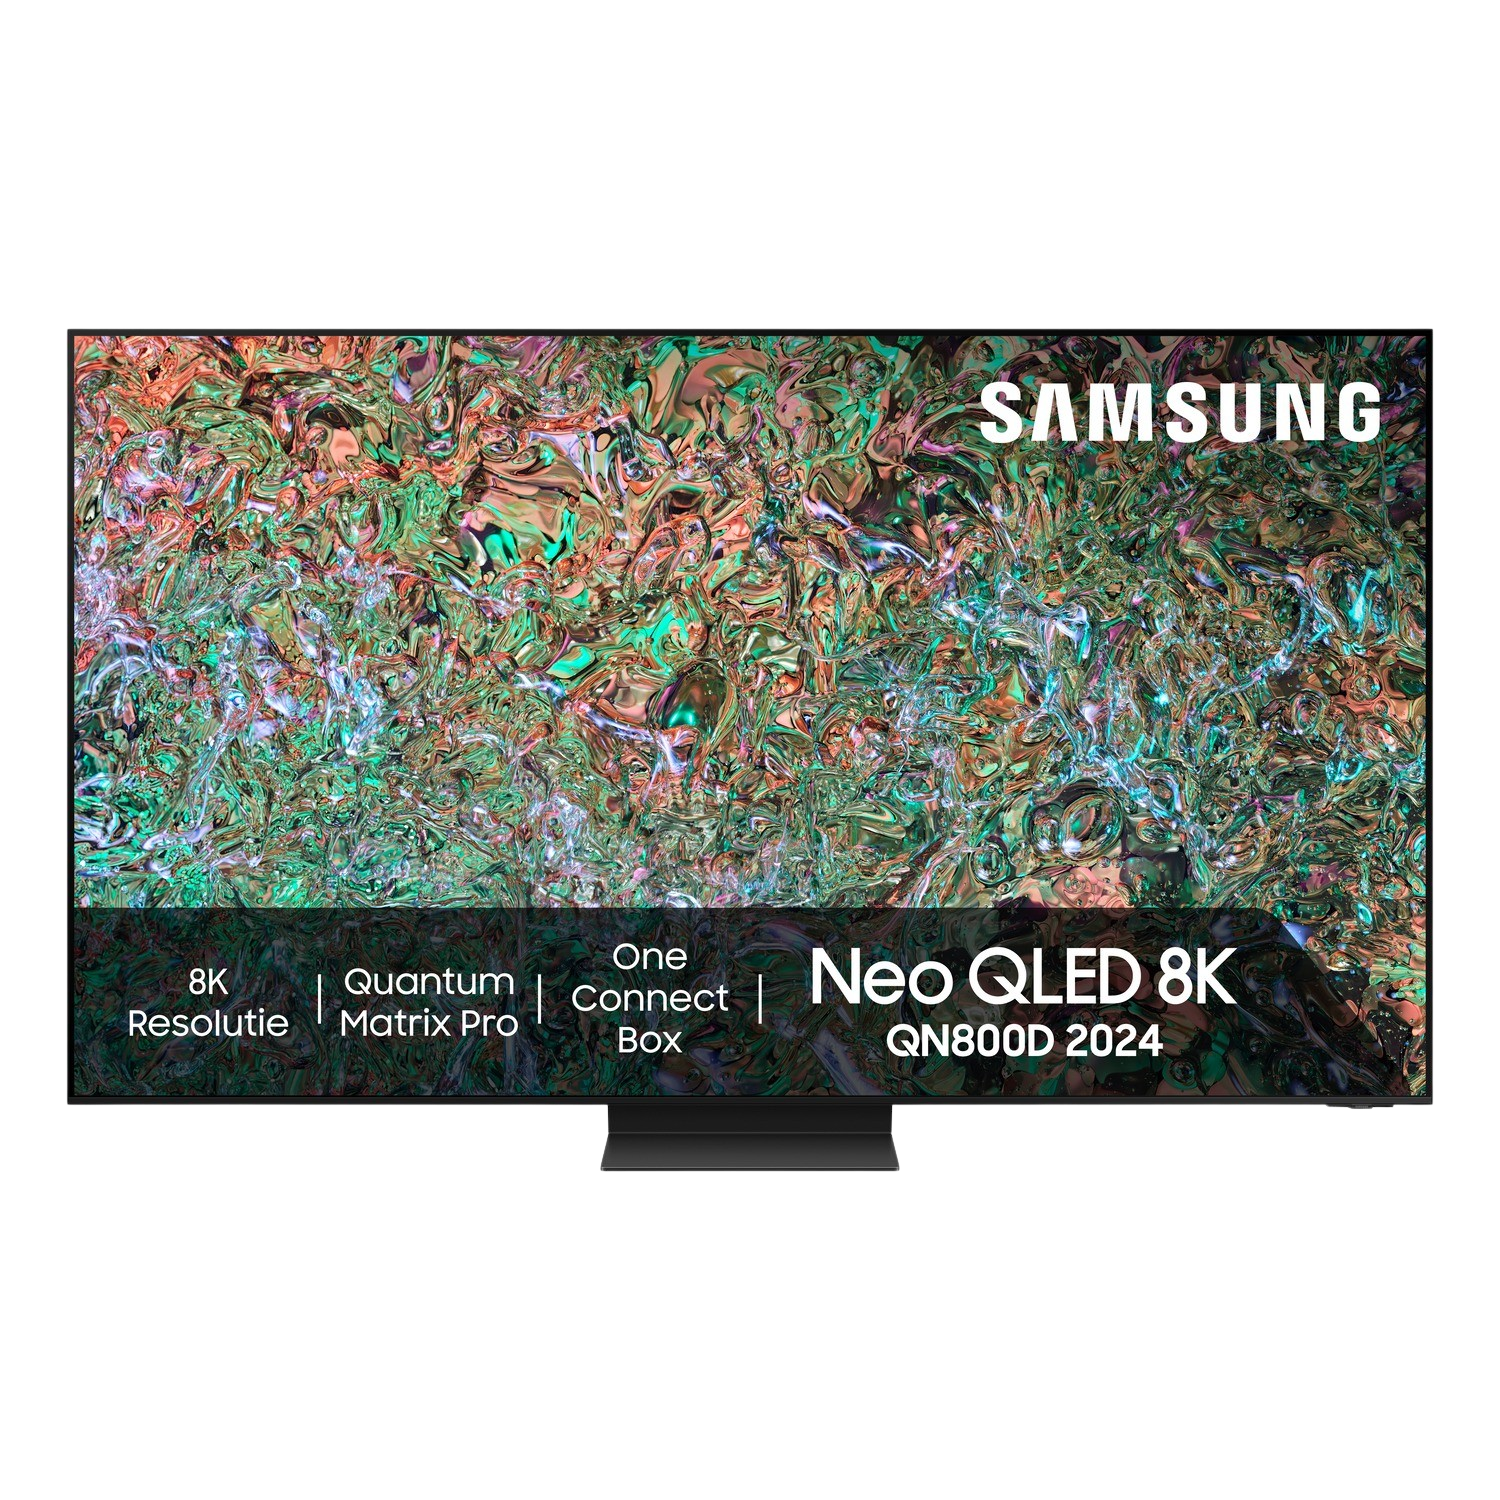 SAMSUNG 65QN800D Neo QLED 8K (2024)